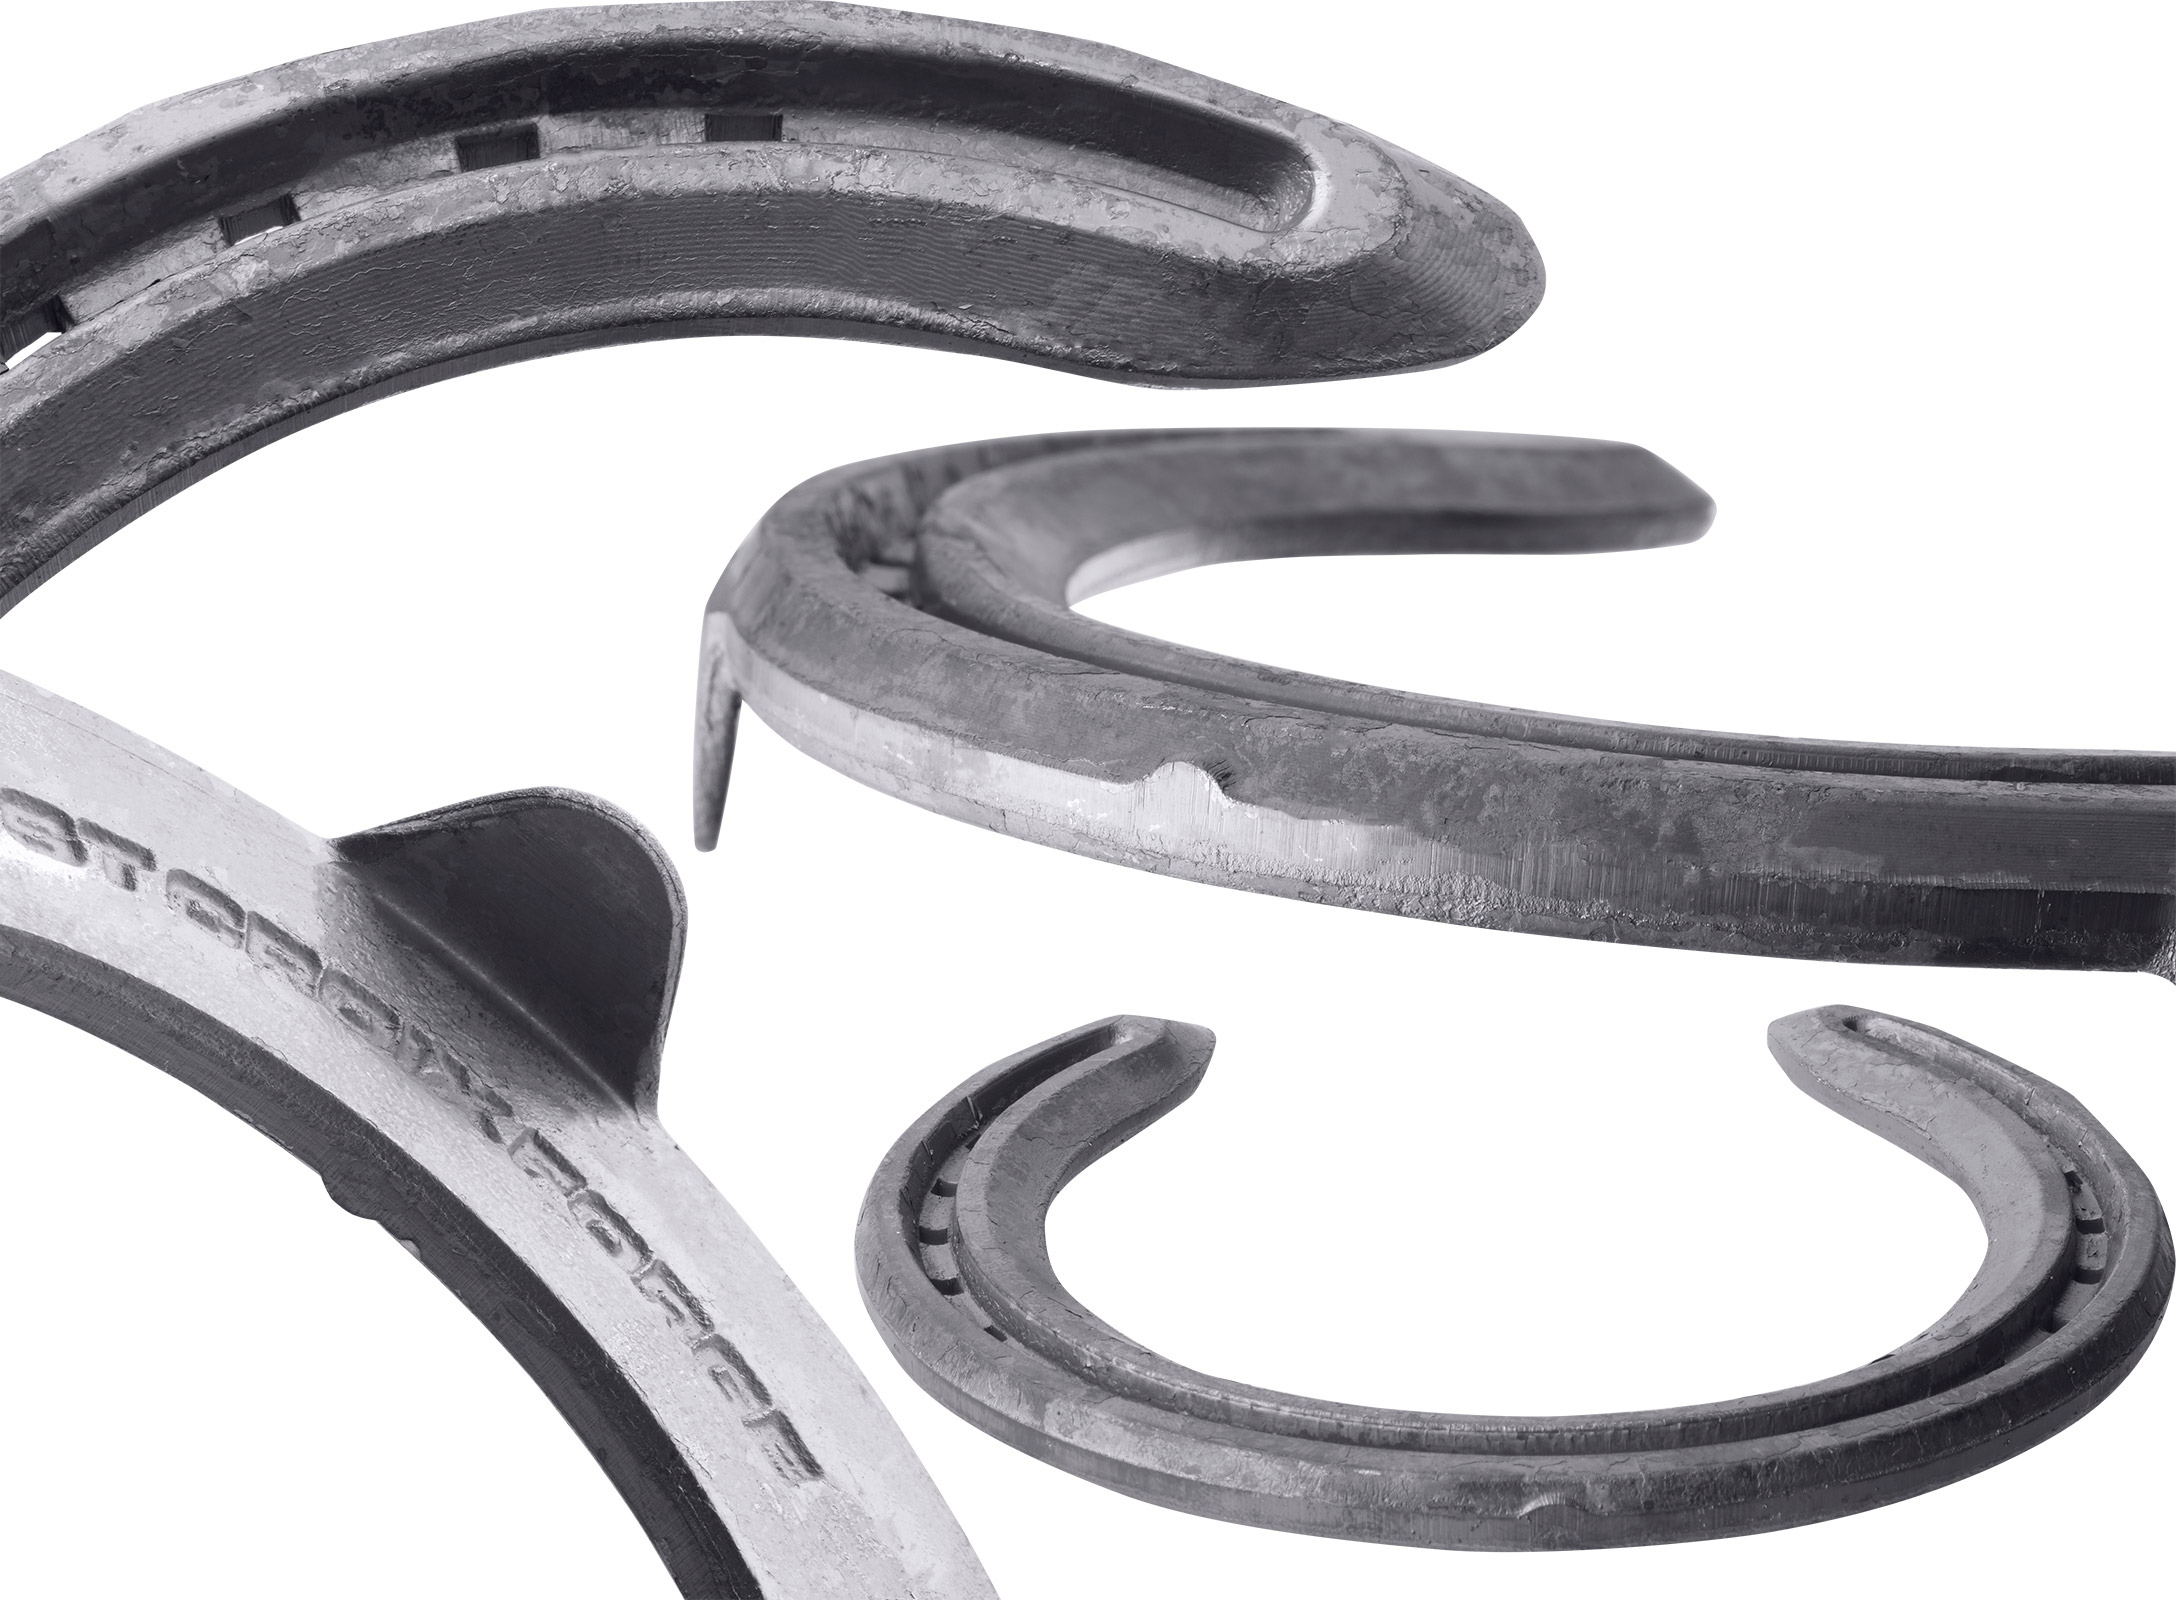 St. Croix Concorde Steel horseshoes, details